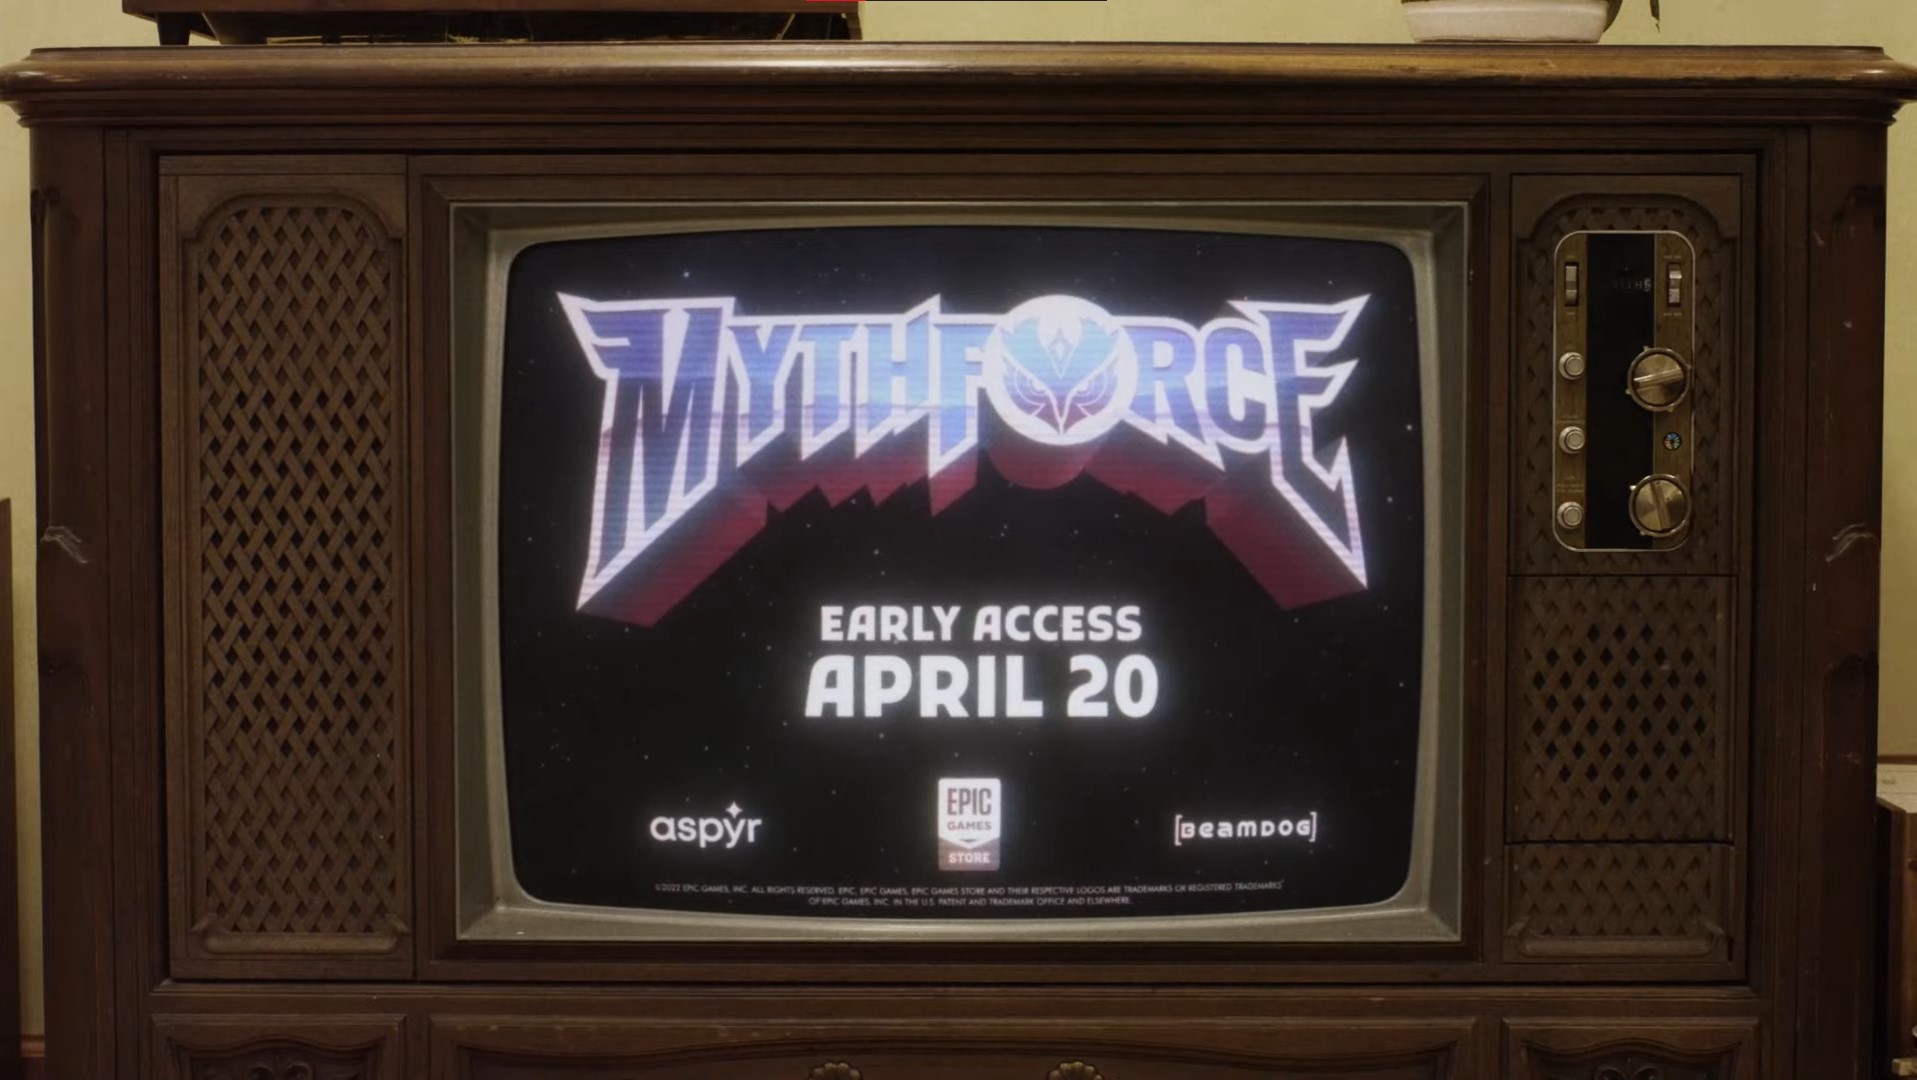 Mythforce announced by Beamdog